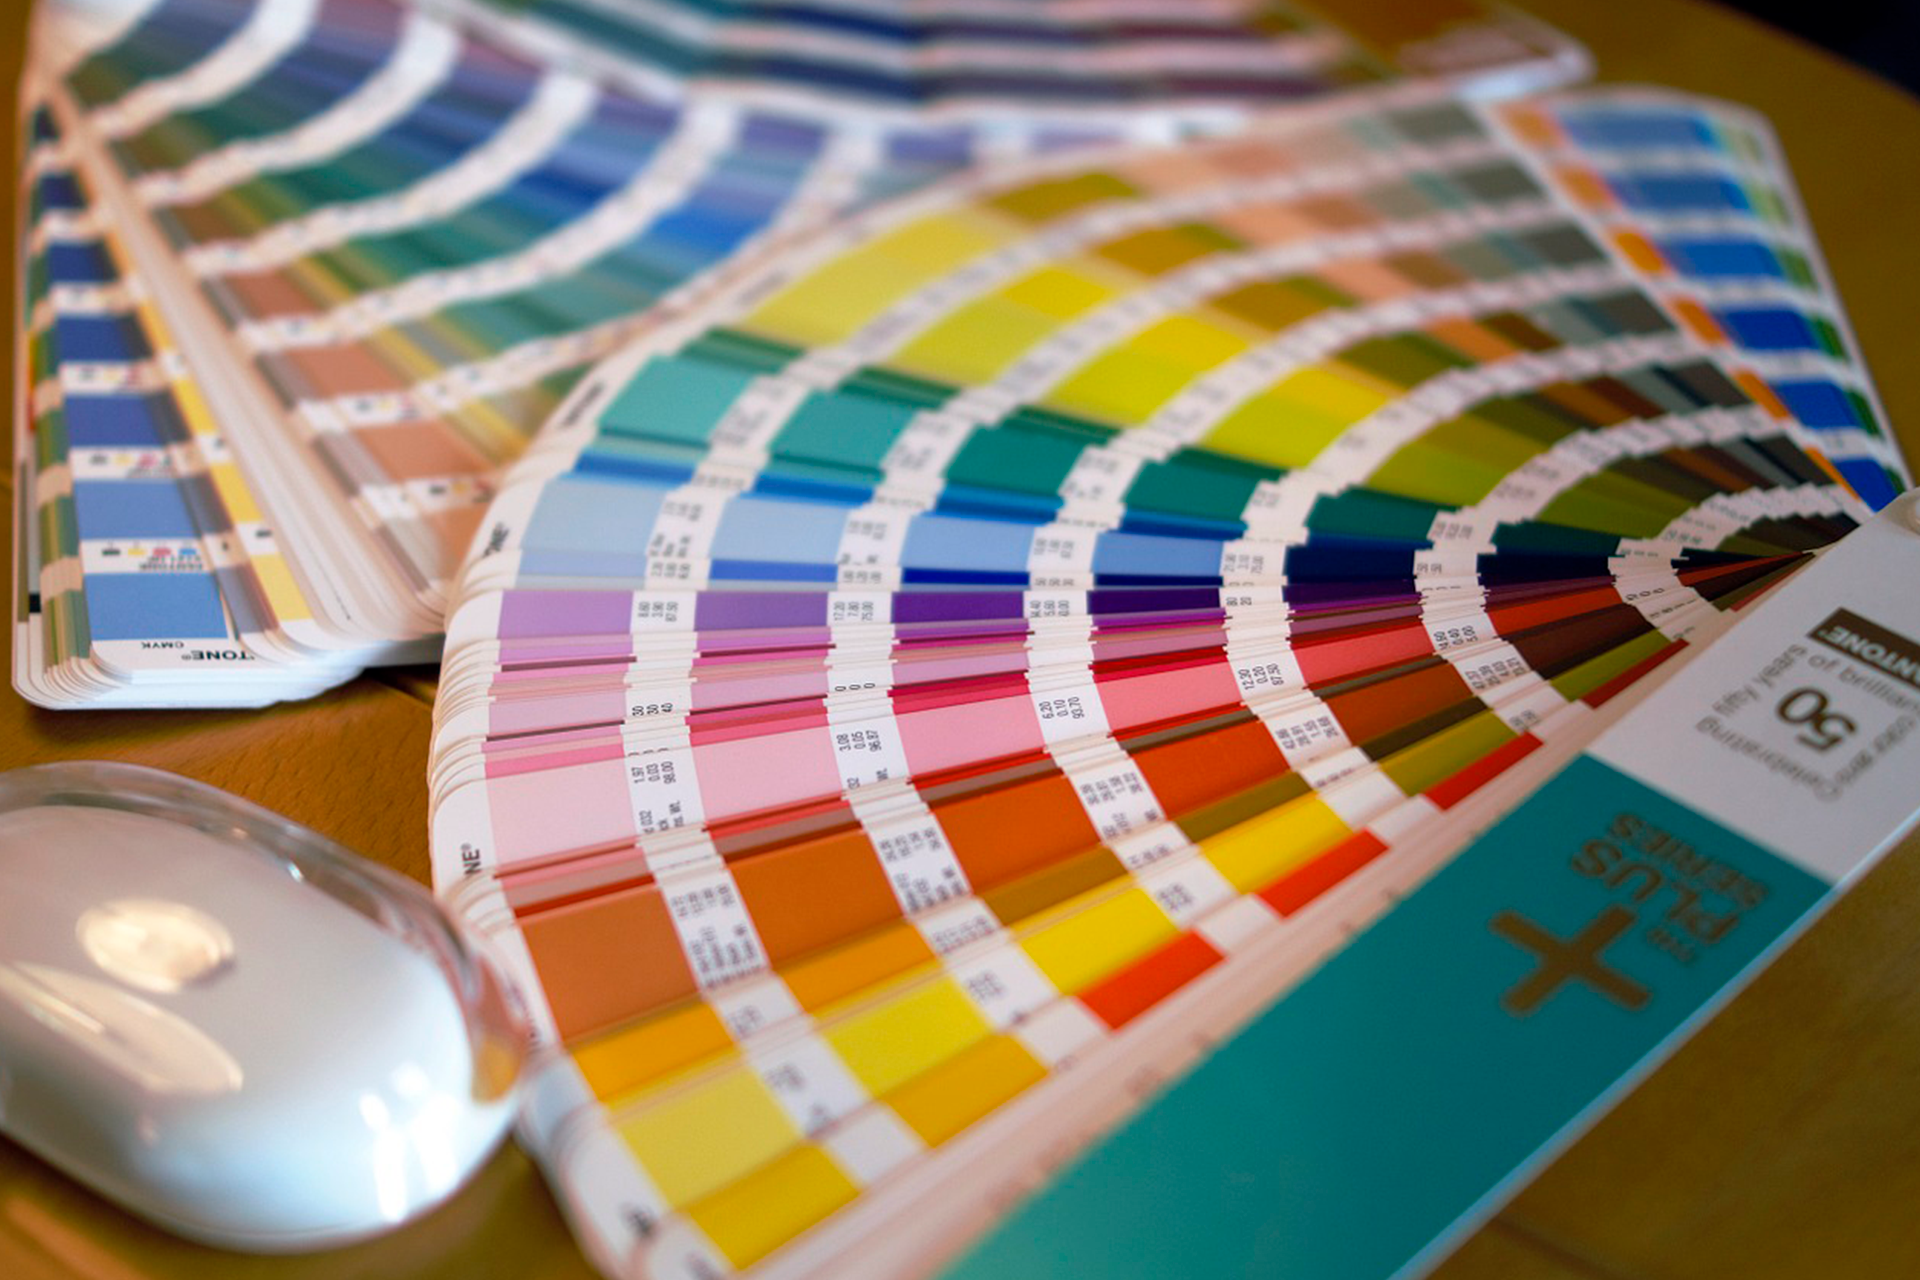 Qual a diferença entre os padrões de cores Pantone e CMYK?